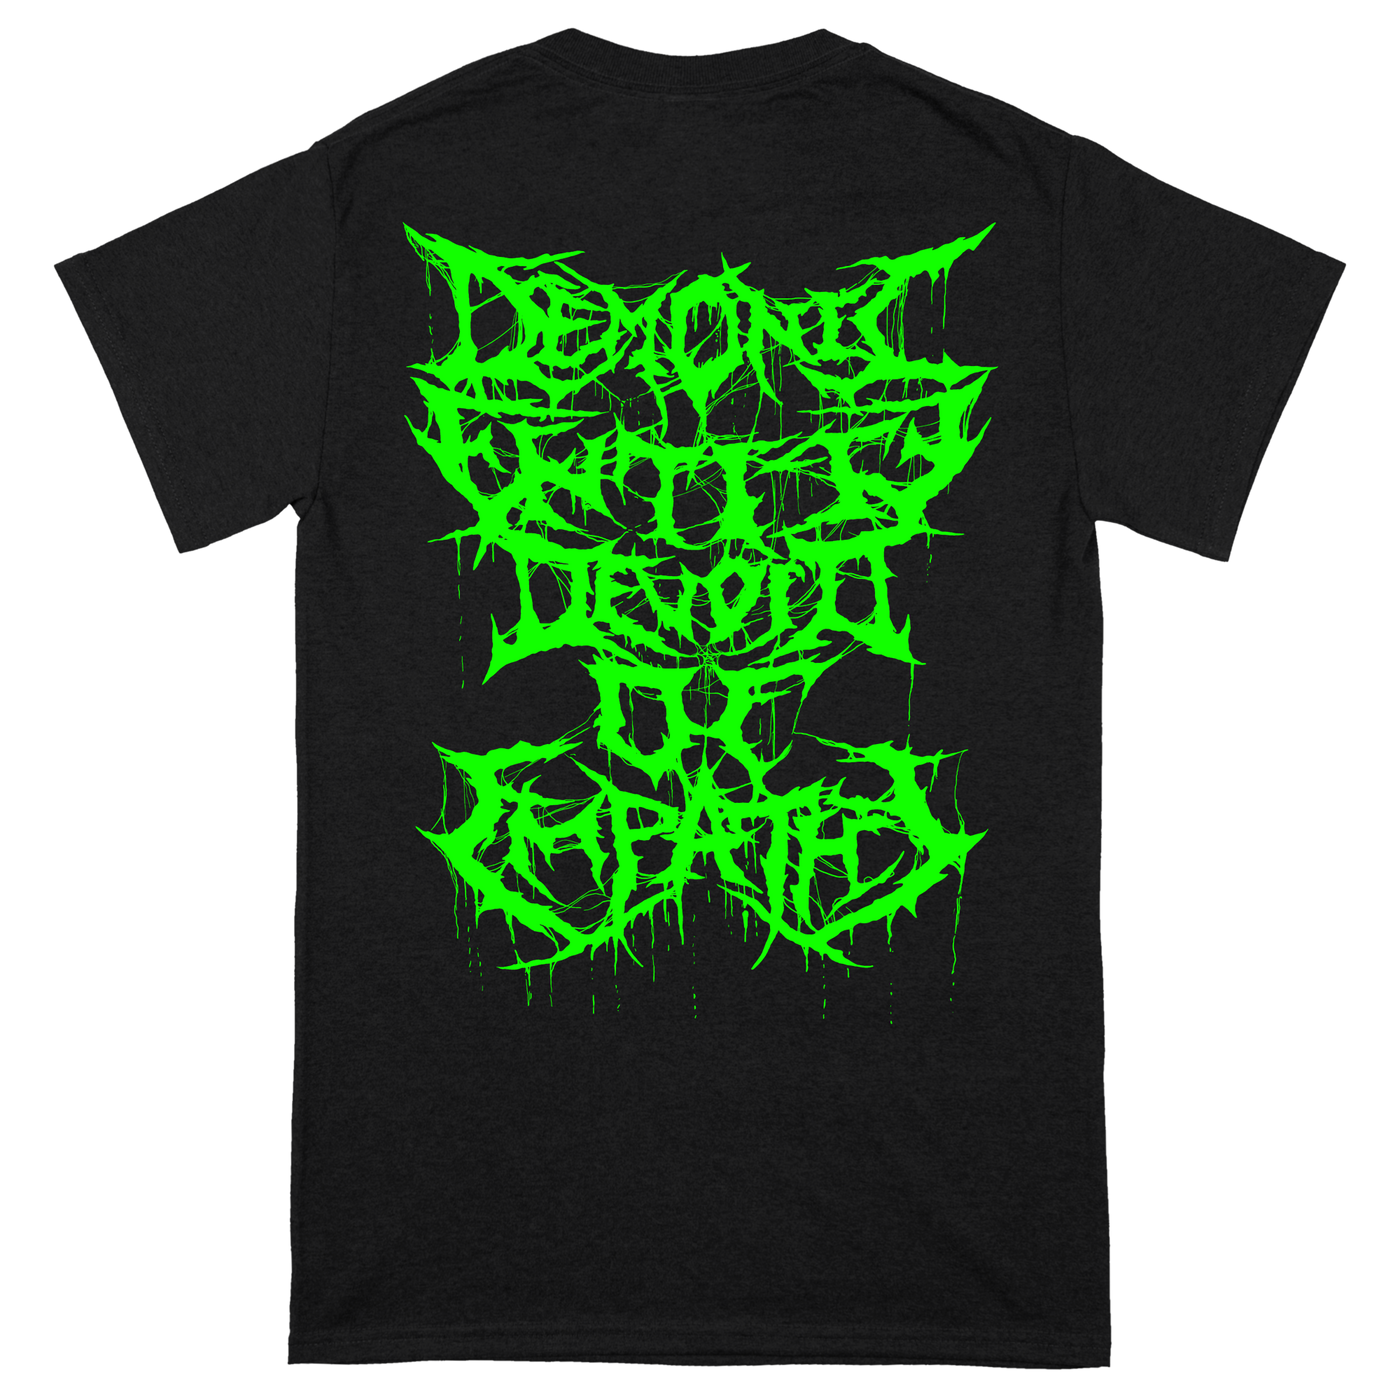 Ingested 'Demonic Entity' T-Shirt